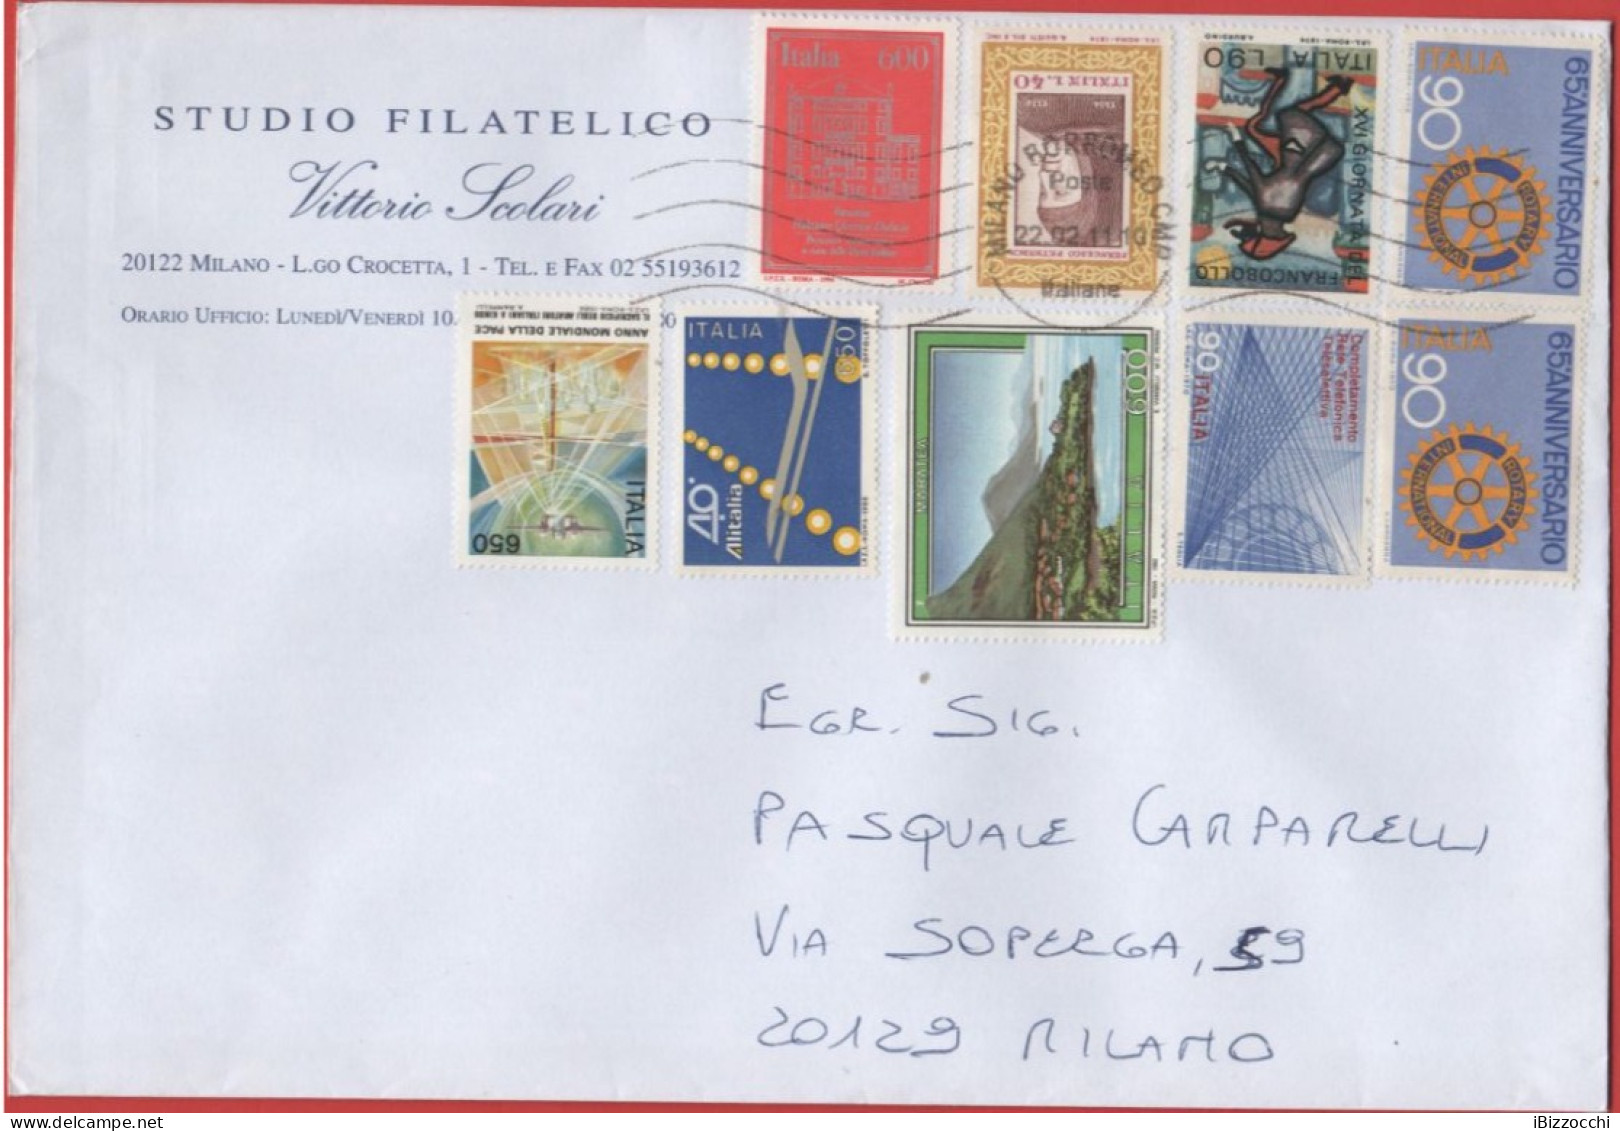 ITALIA - Storia Postale Repubblica - 2011 - 9 Francobolli Dal 1974 Al 1994 - Studio Filatelico Scolari Vittorio - Viaggi - 2011-20: Storia Postale